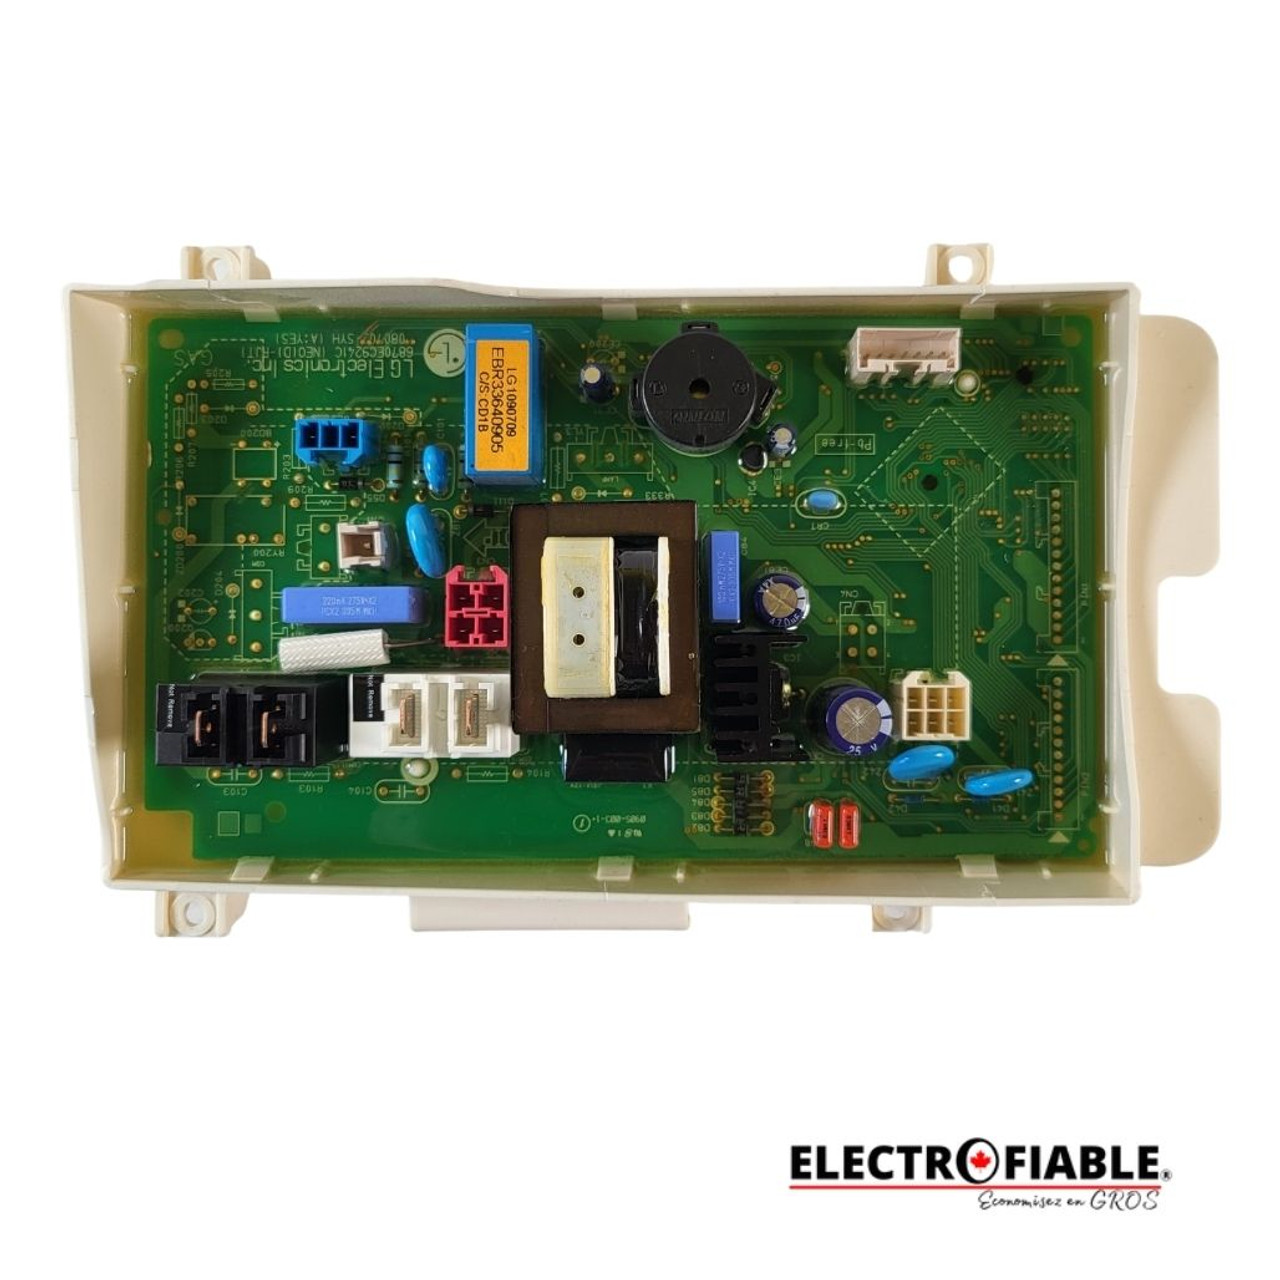 EBR33640905 Control board for LG dryer